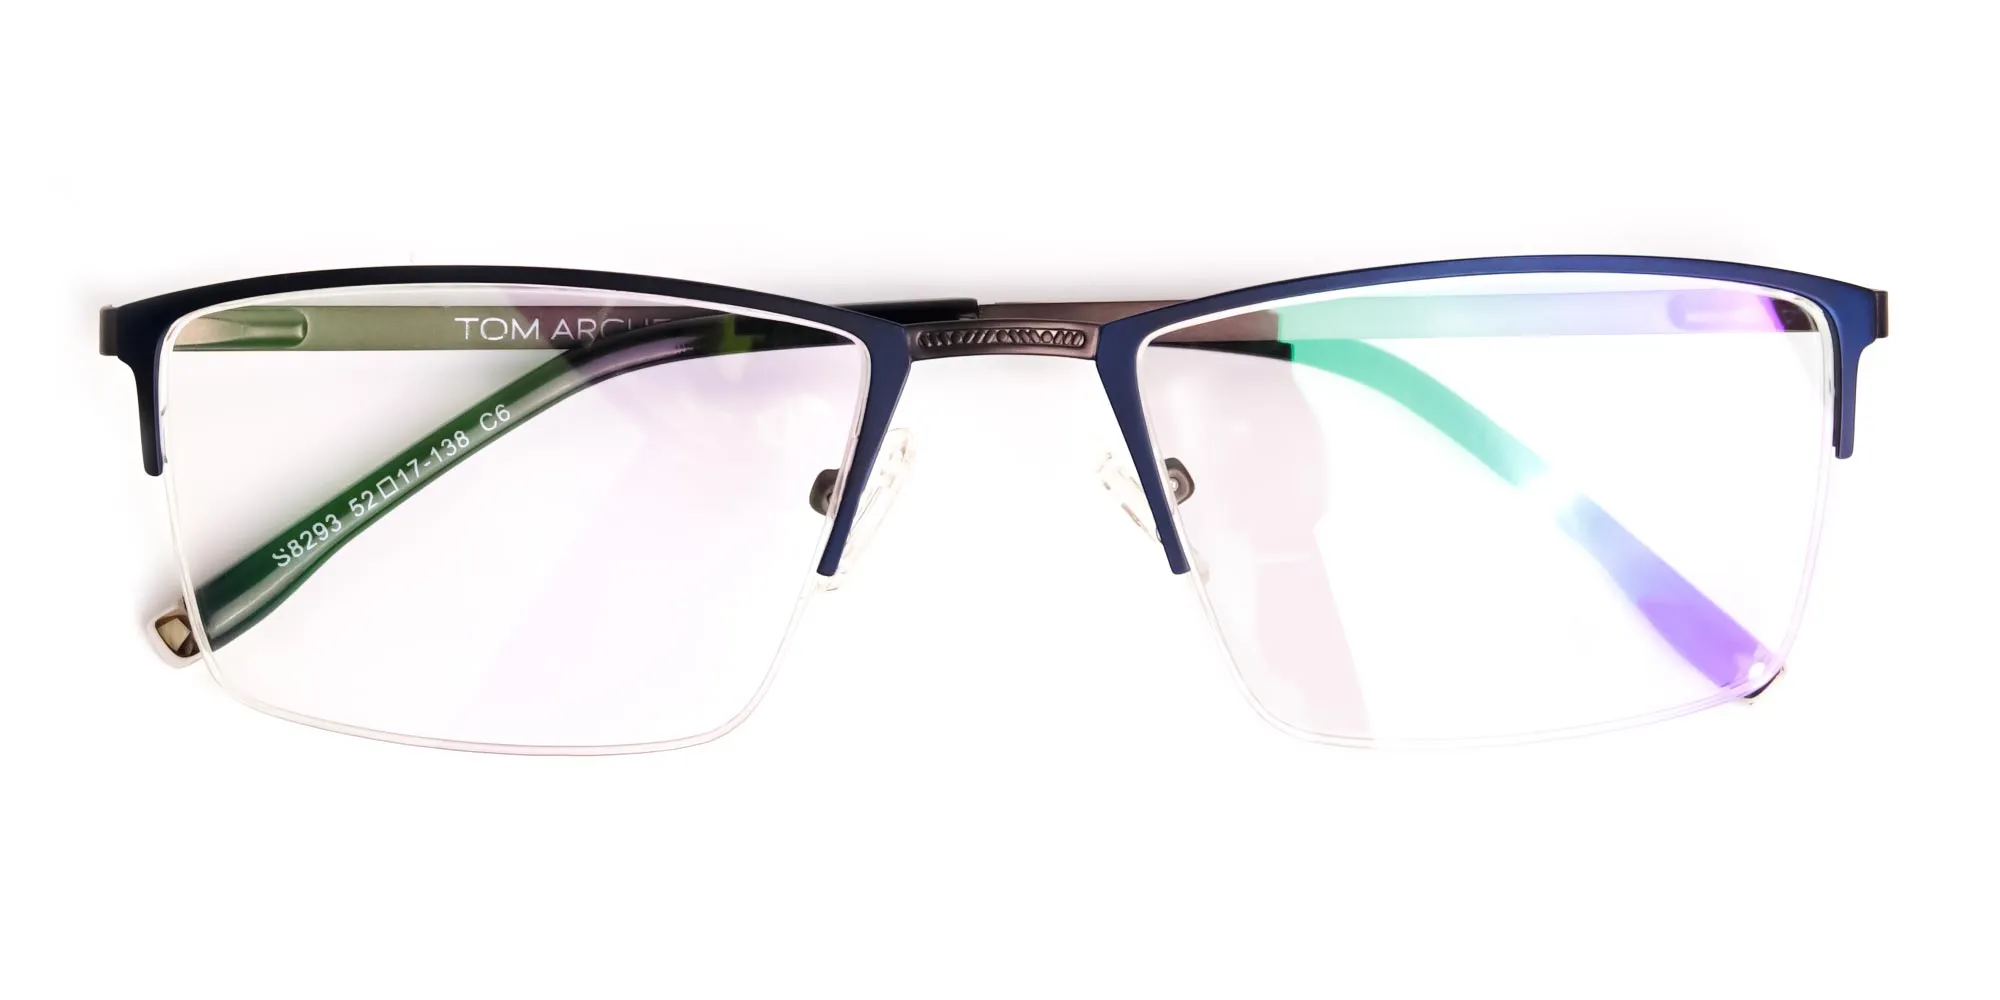 navy blue half-rim rectangular glasses frames-2